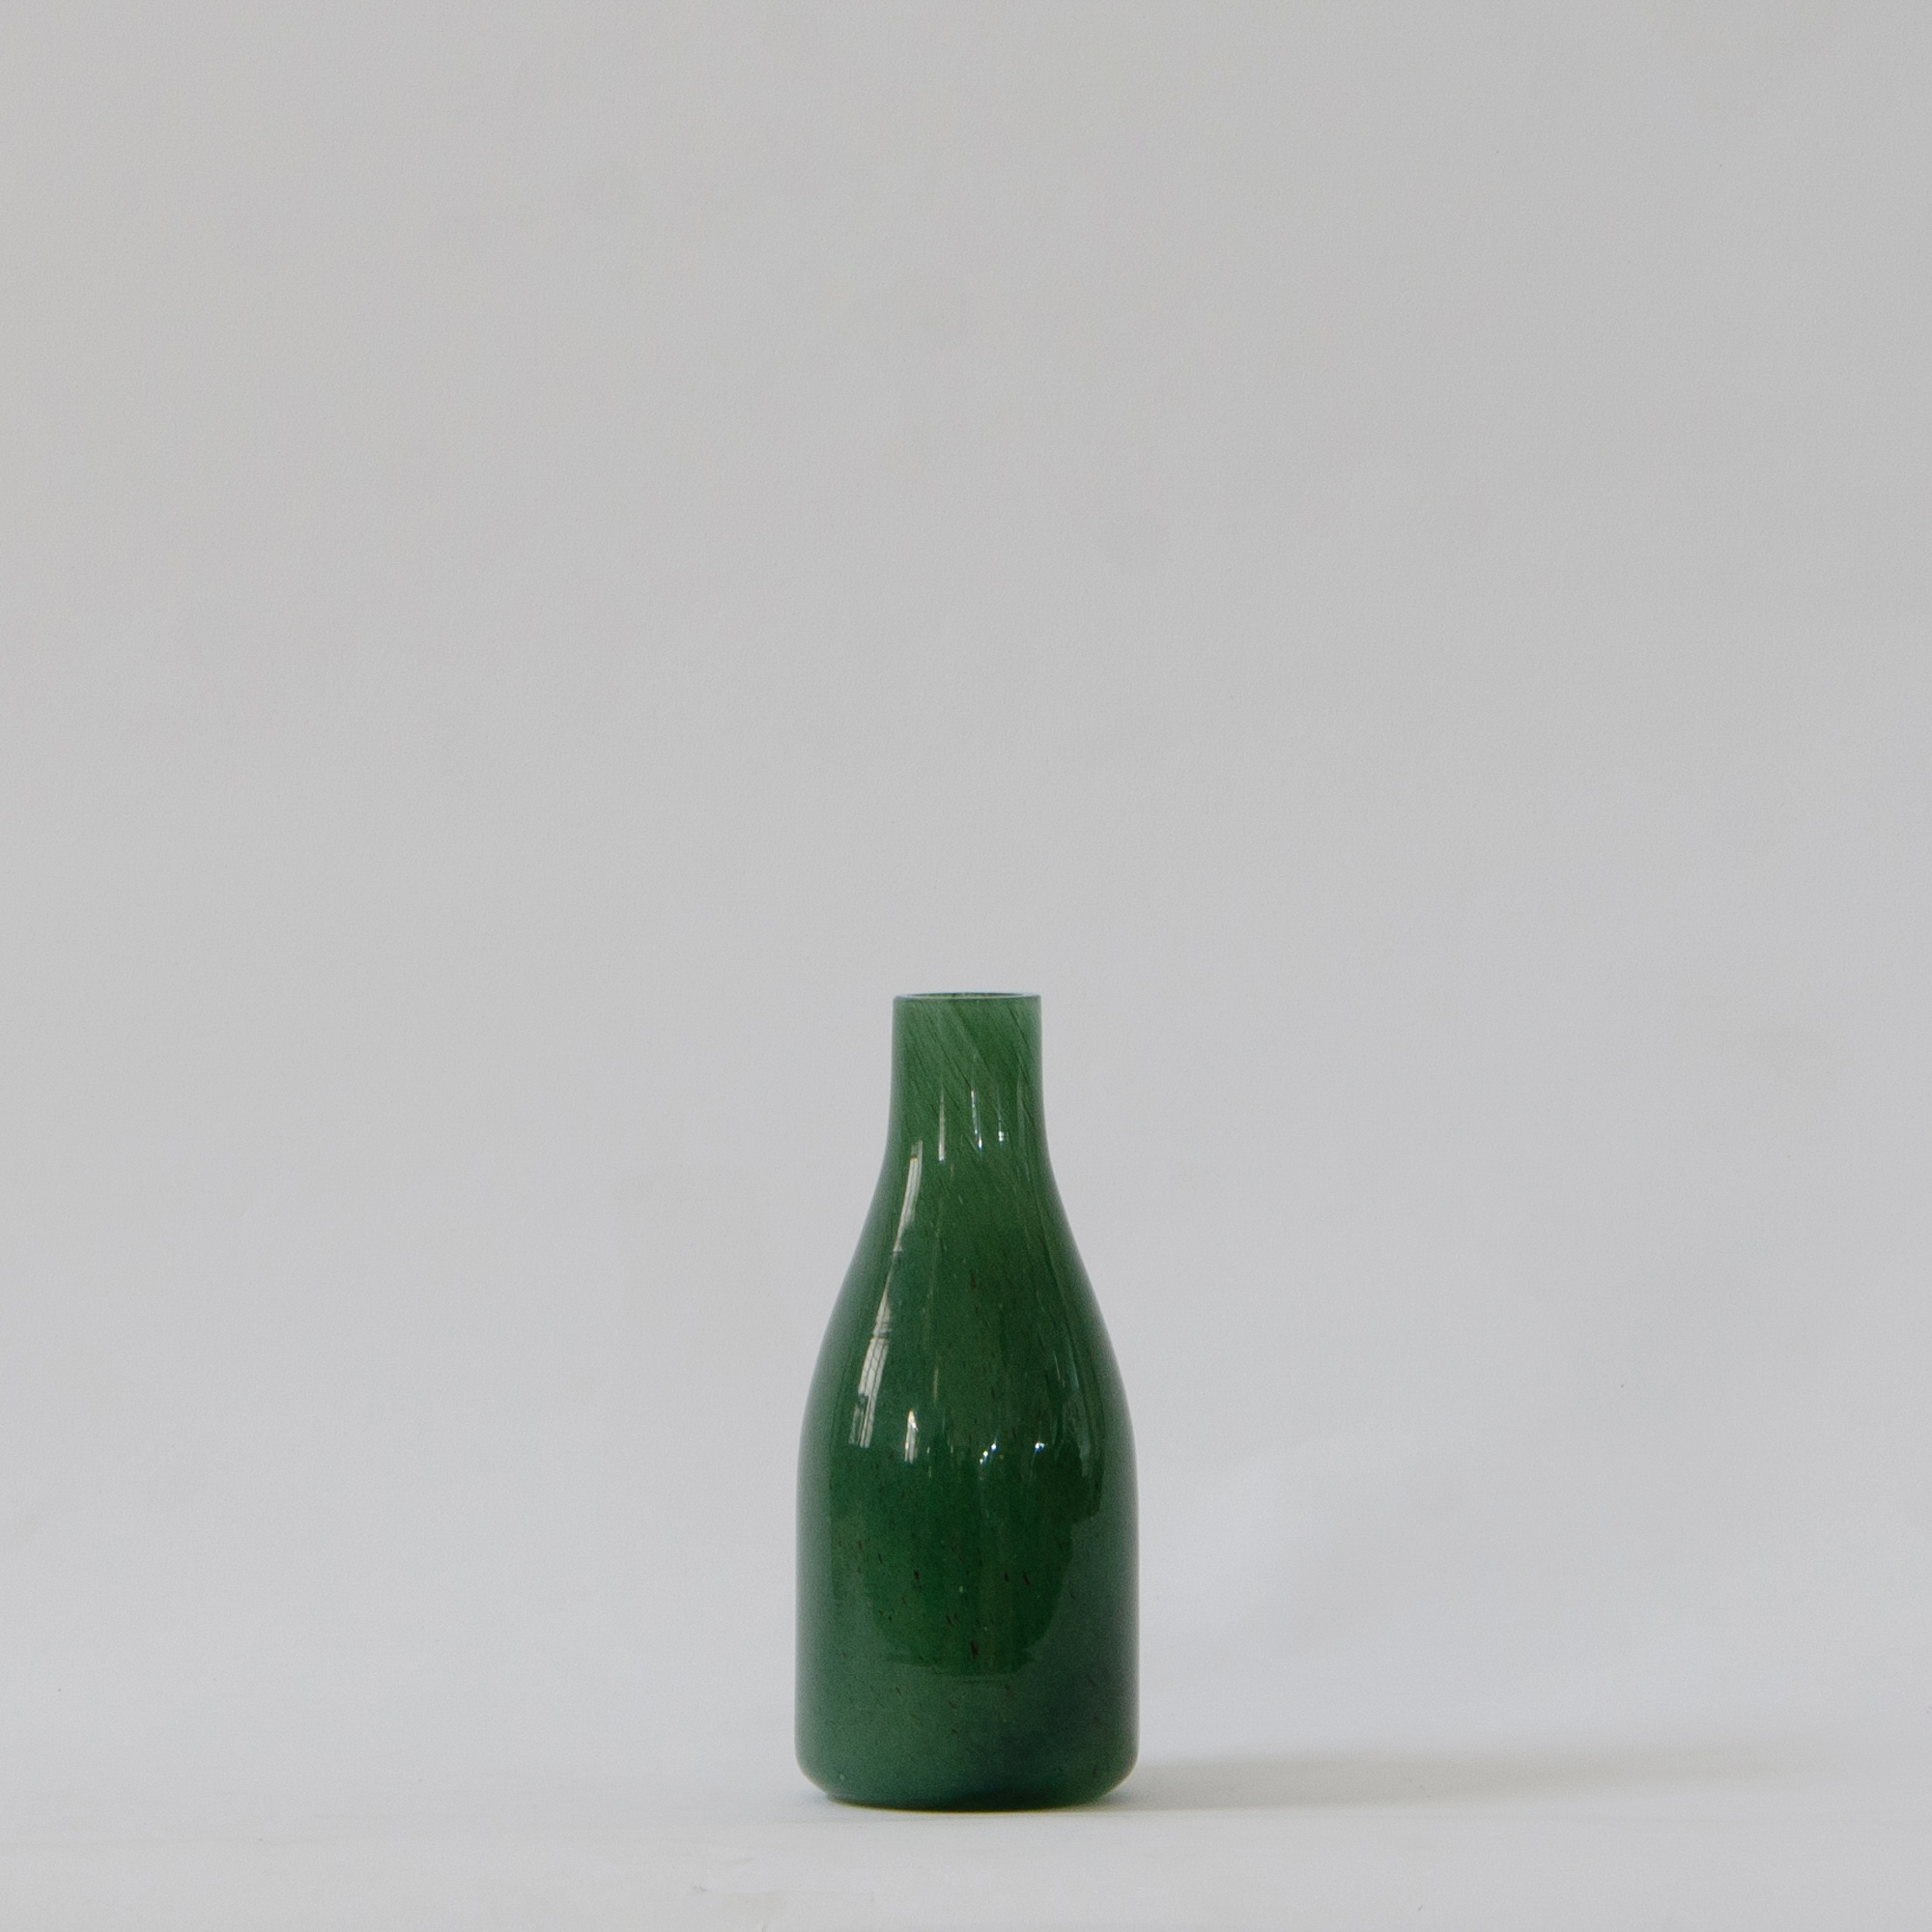 Jewel Glass Vase - Emerald